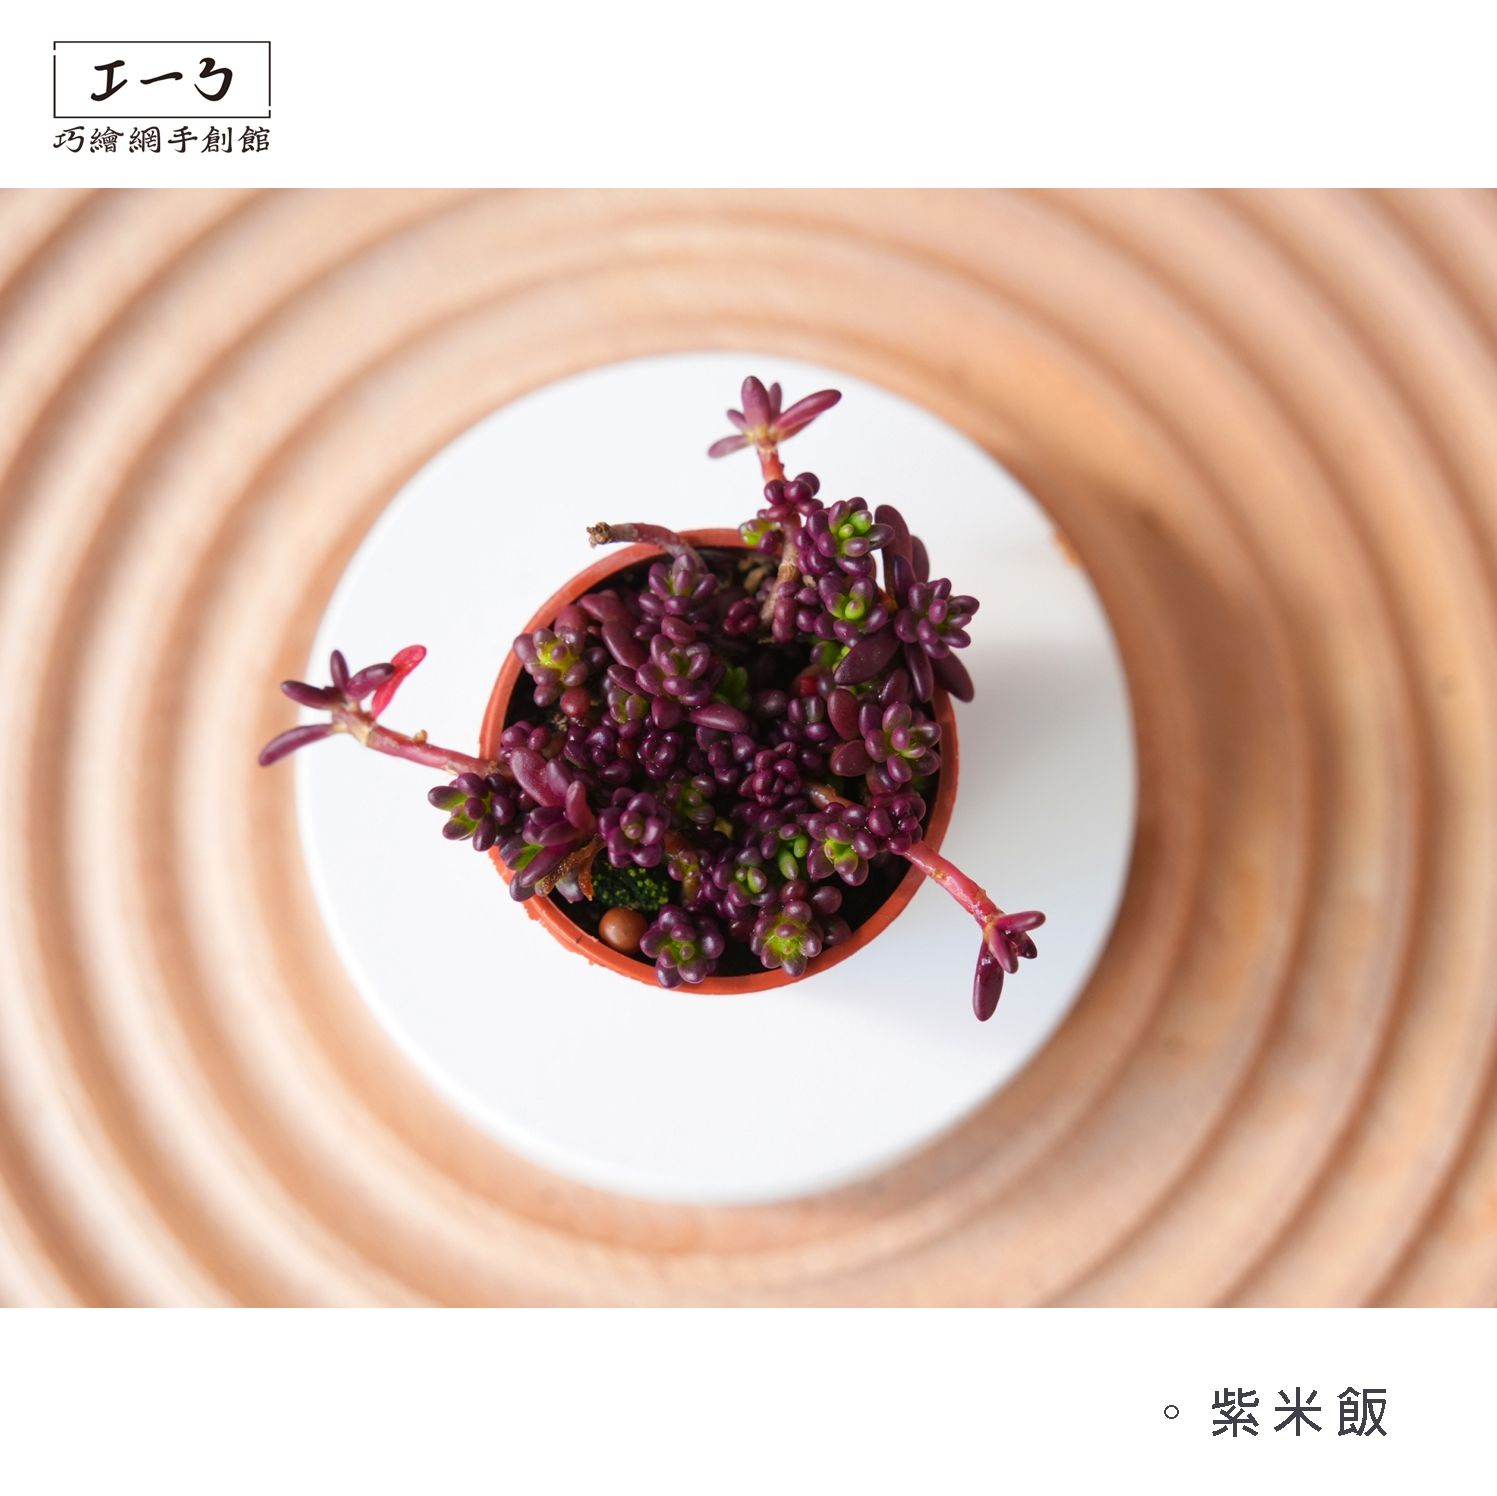 紫米飯 : 一吋